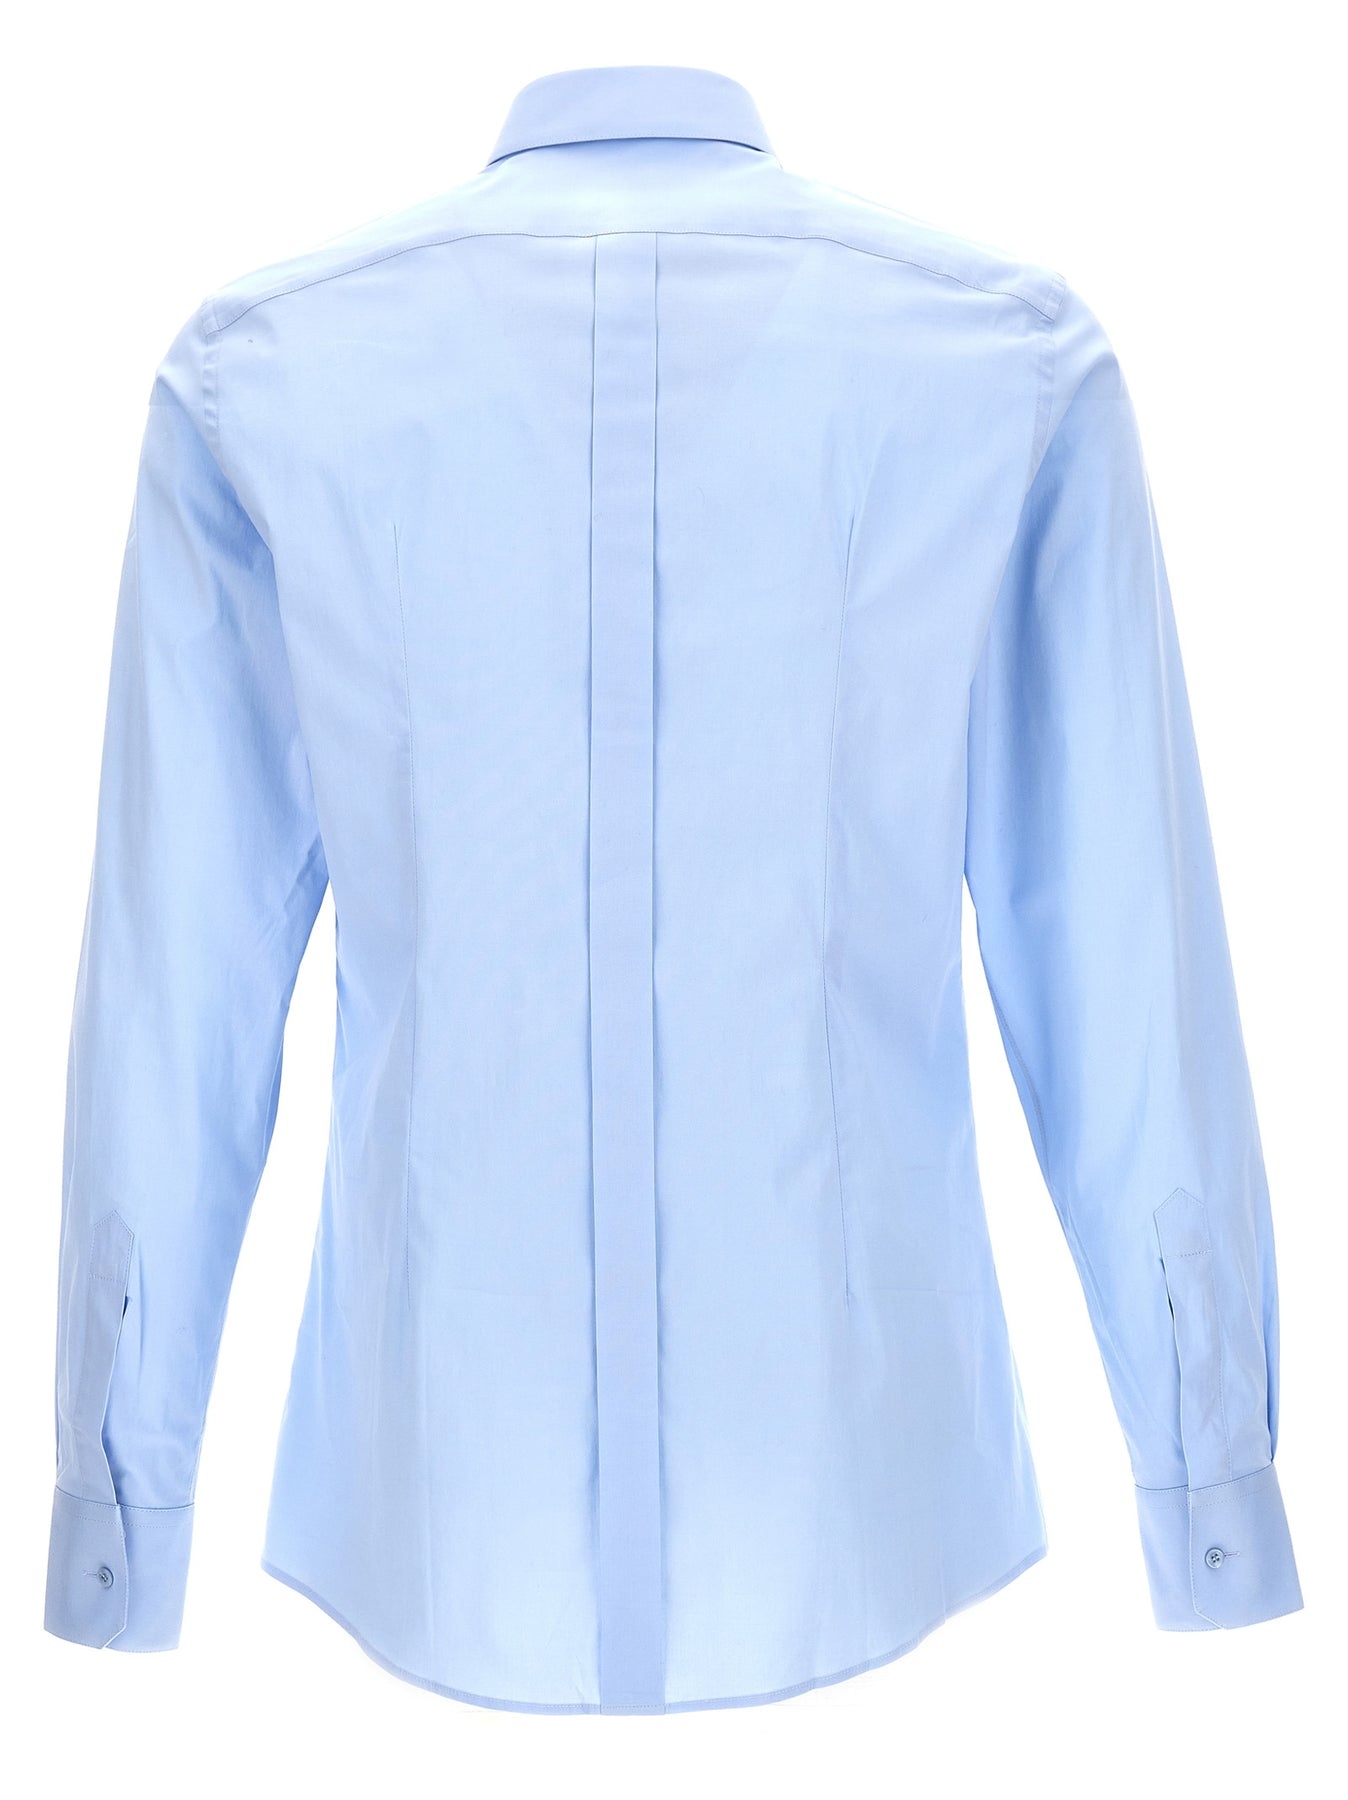 Dg Essential Shirt Shirt, Blouse Light Blue - 2